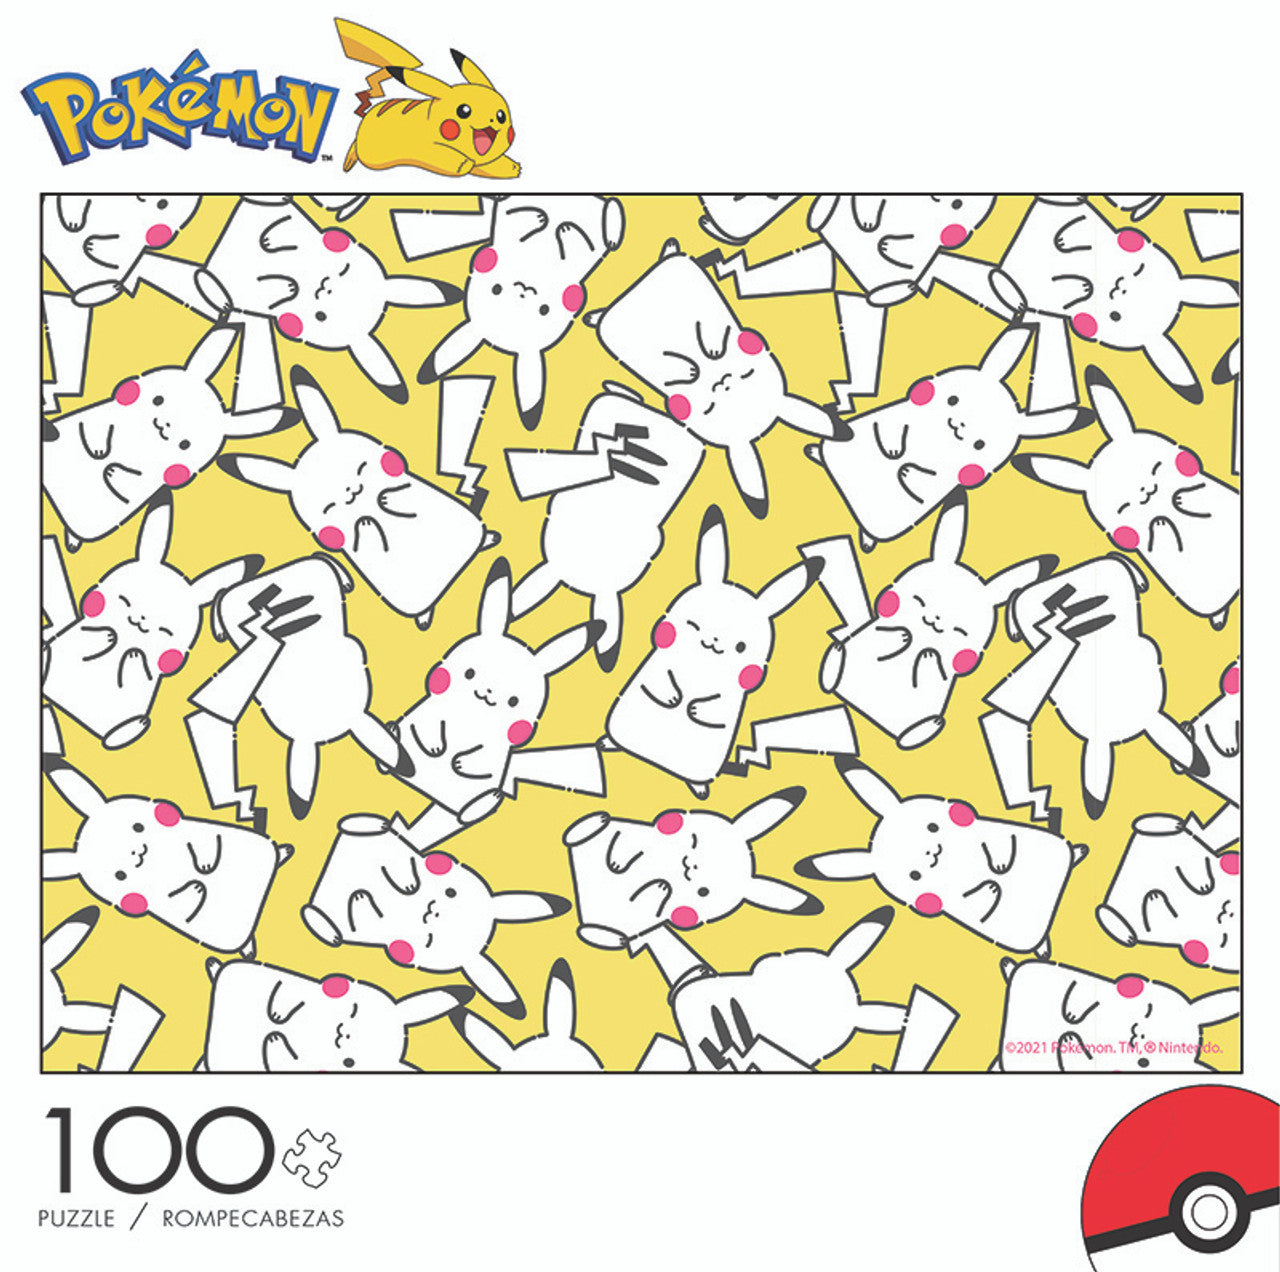 Pokémon Celebration 100 Piece Jigsaw Puzzle